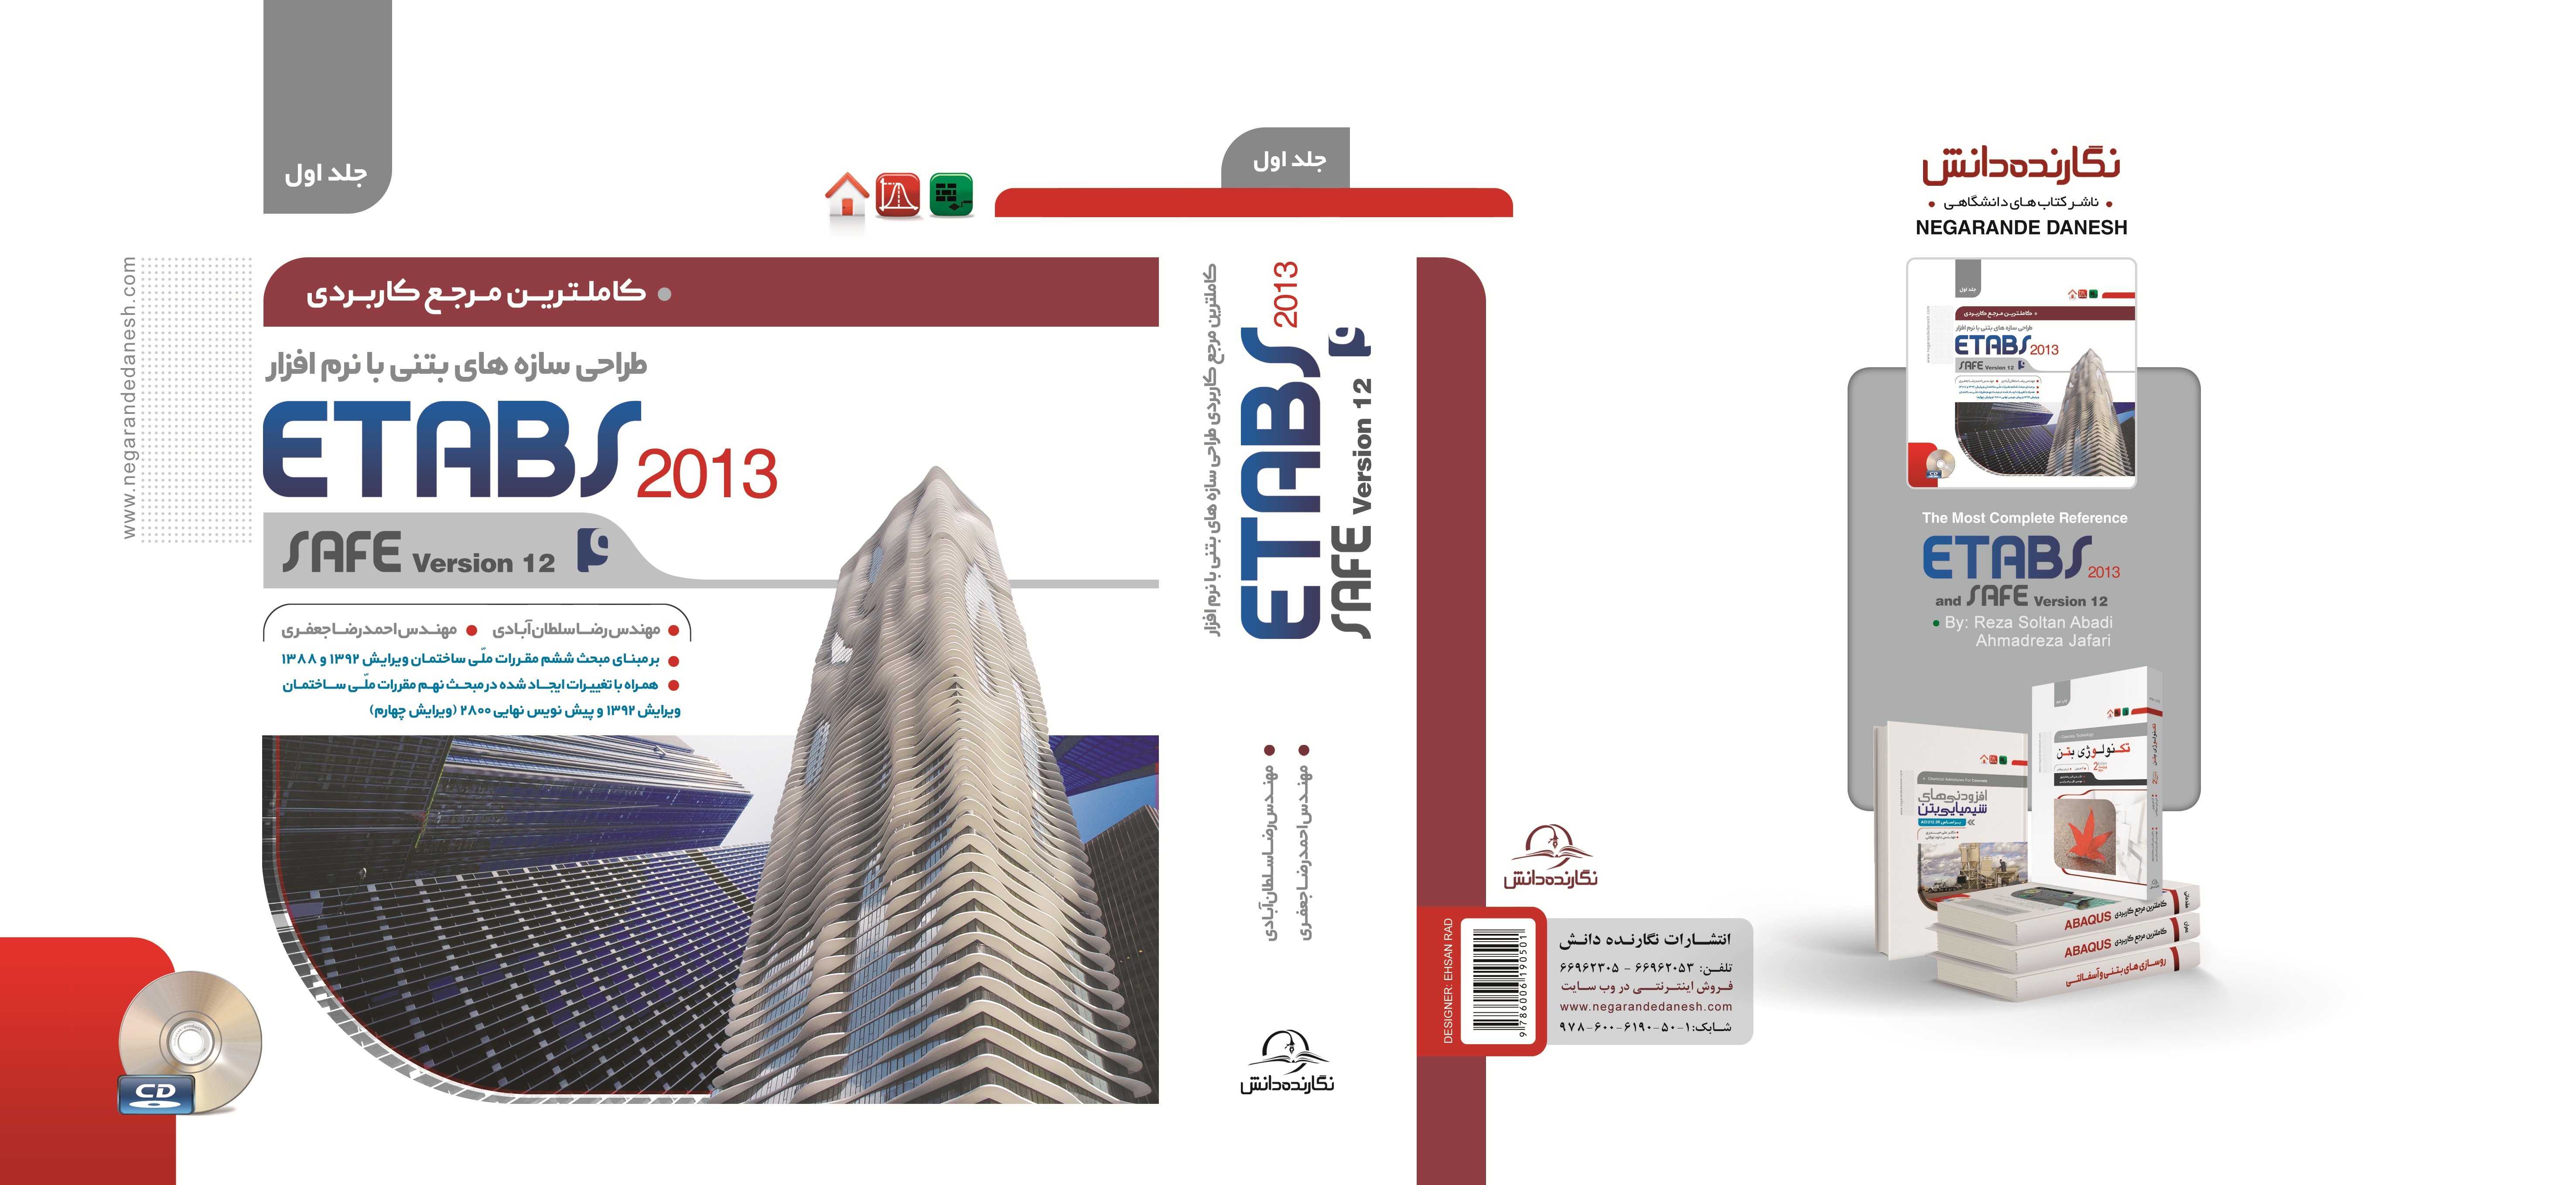 معرفی کتاب : مرجع کاربردی طراحی سازه های بتنی با نرم افزار ETABS 2013 و SAFE 12 